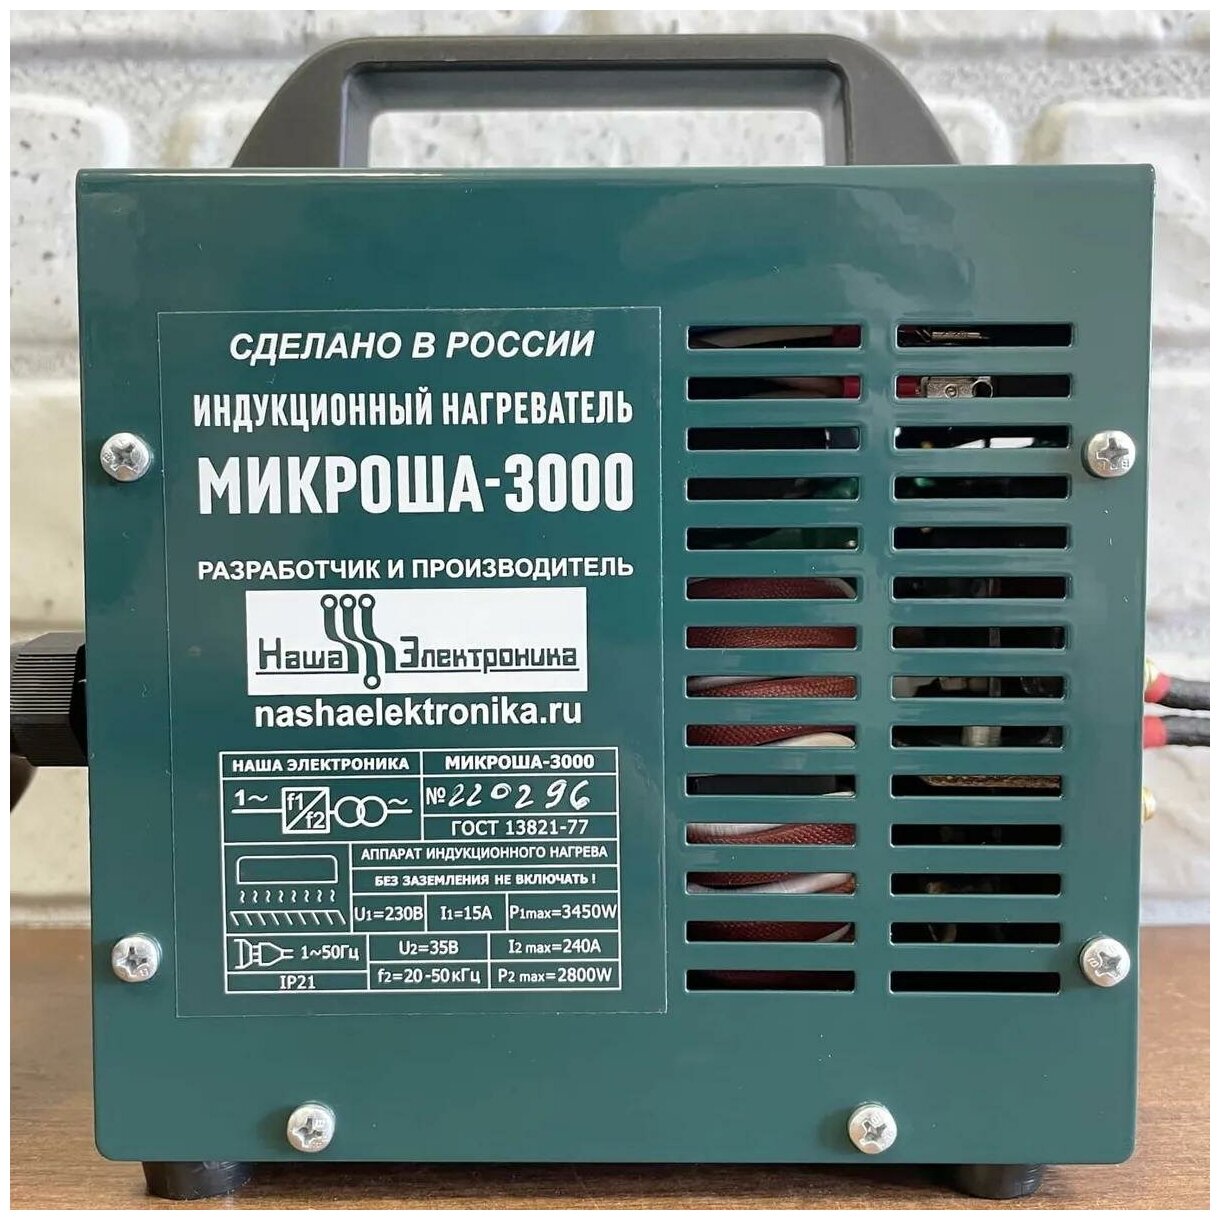  нагреватель Микроша-3000 / Беспламенный индуктор для .